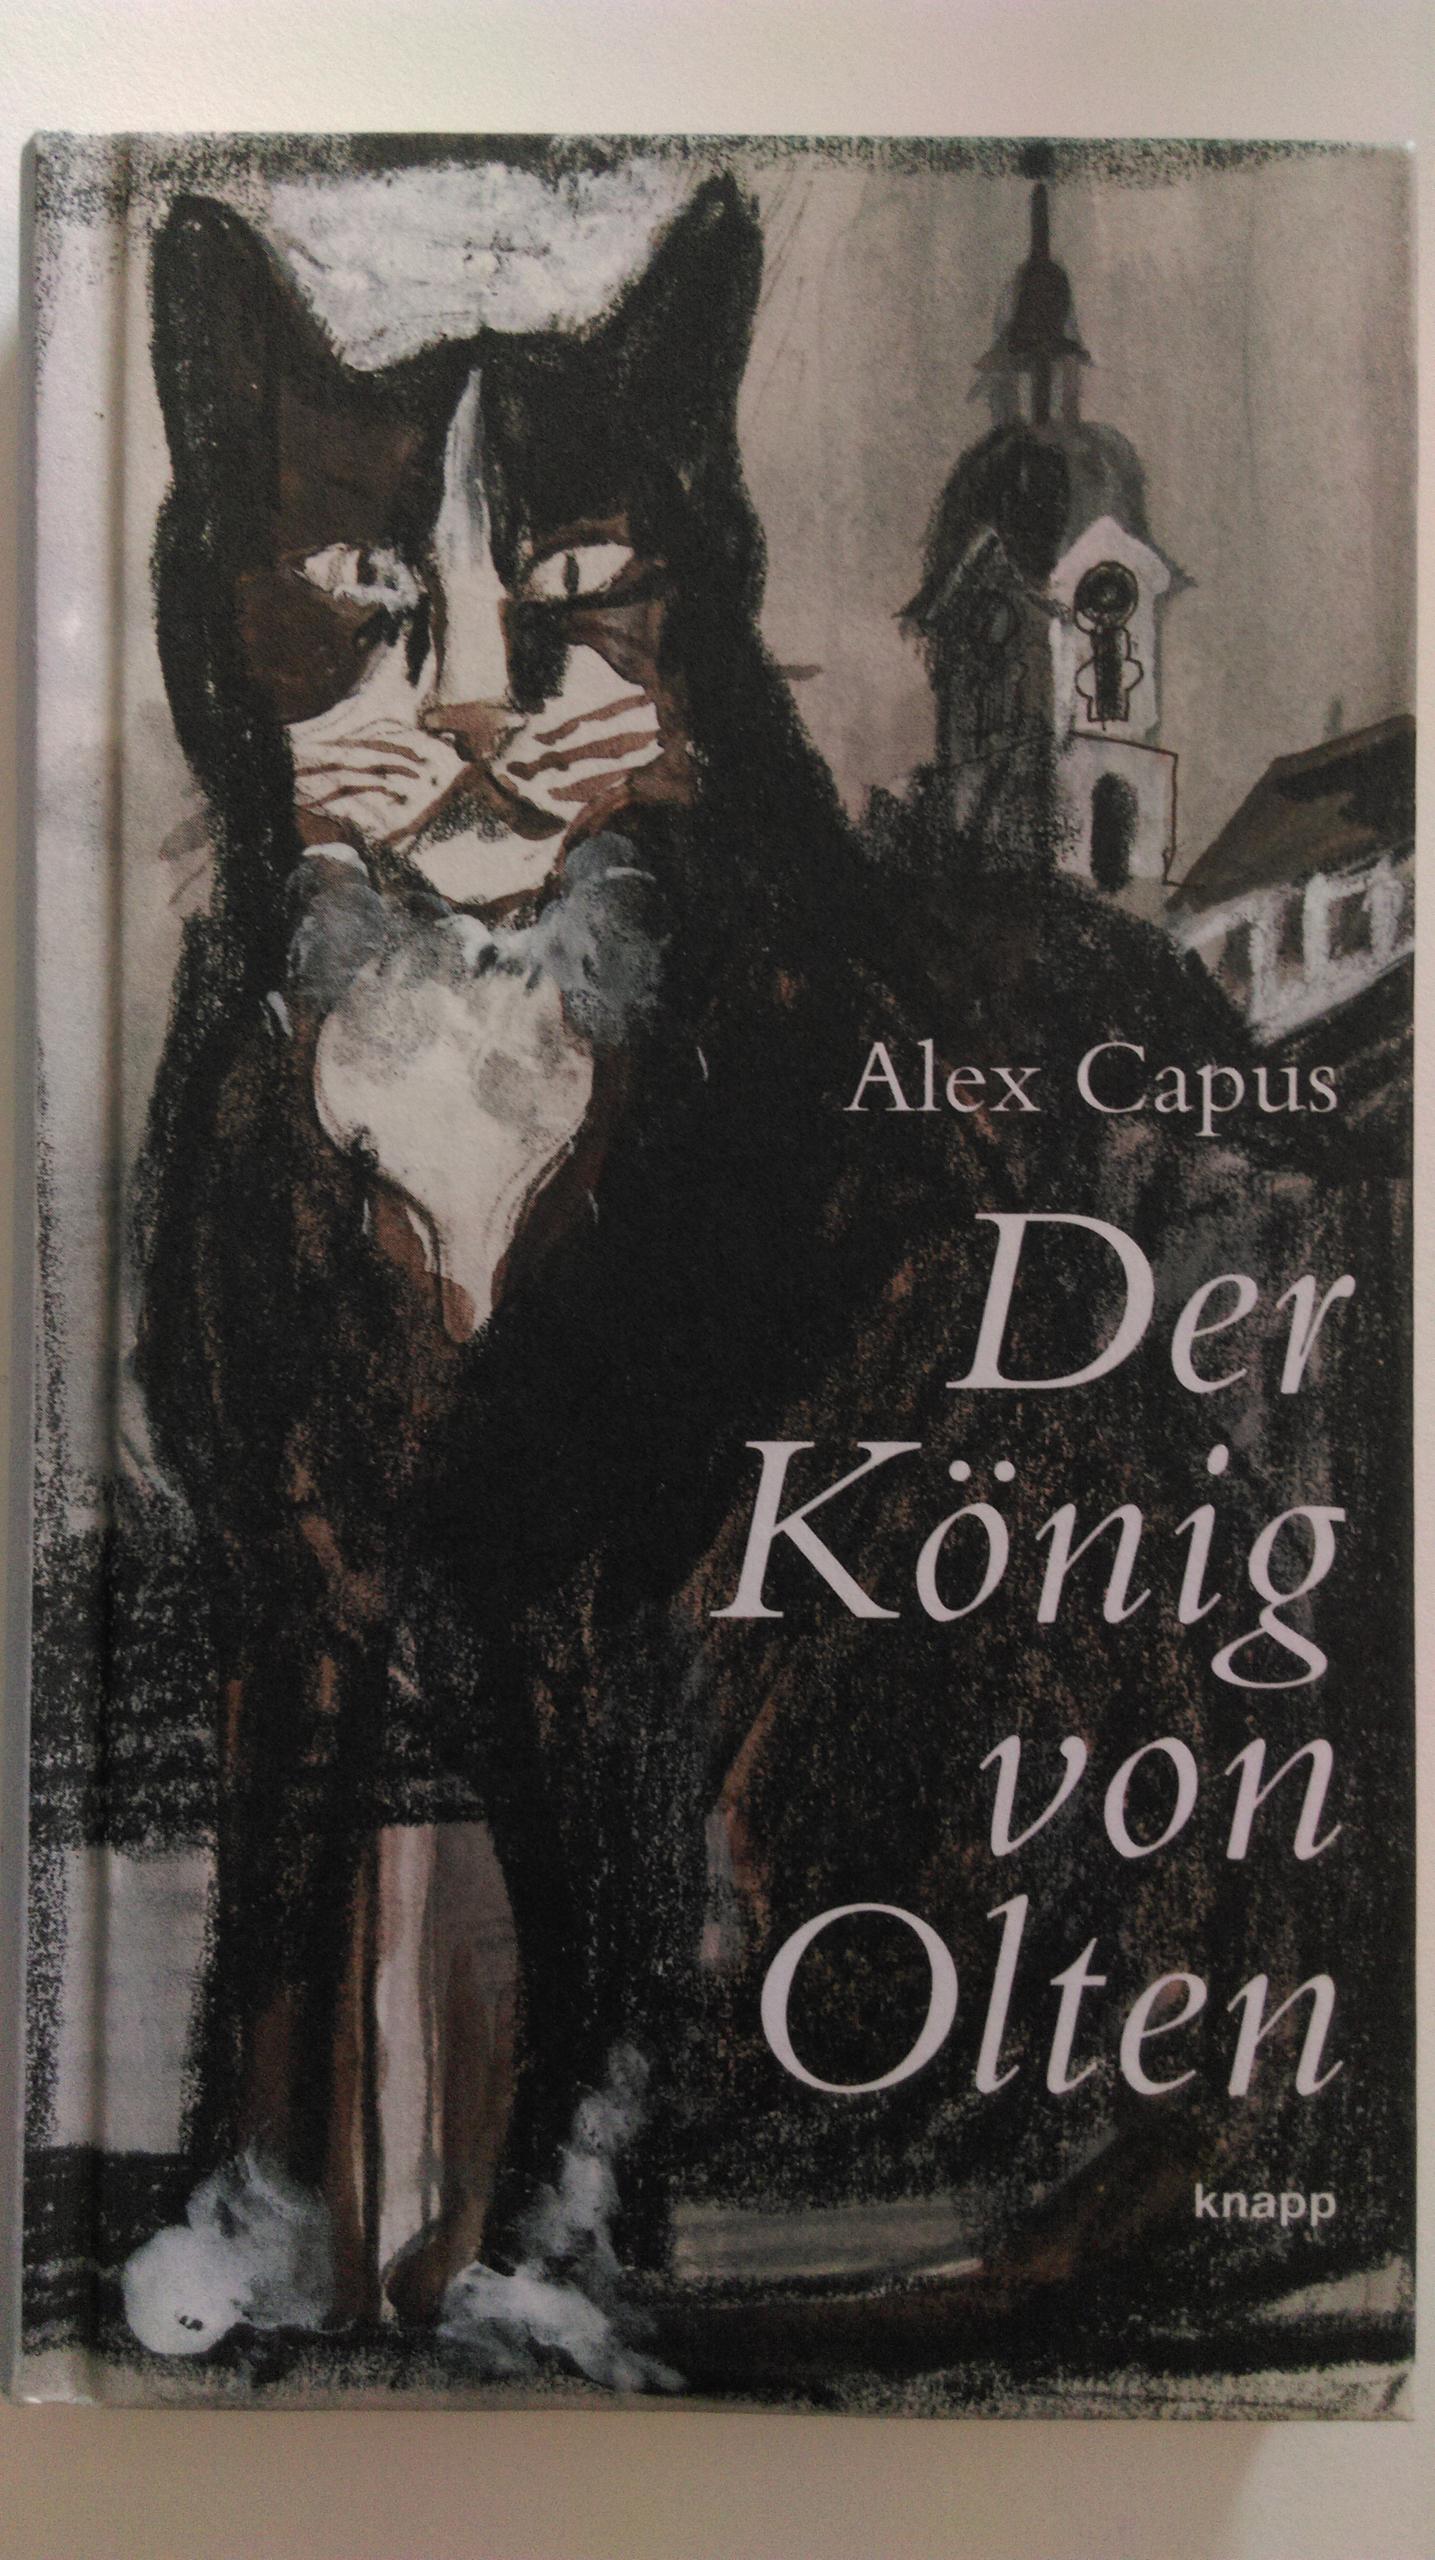 畅销书《奥尔腾之王》(Der König von Olten)令图卢茨名声大噪